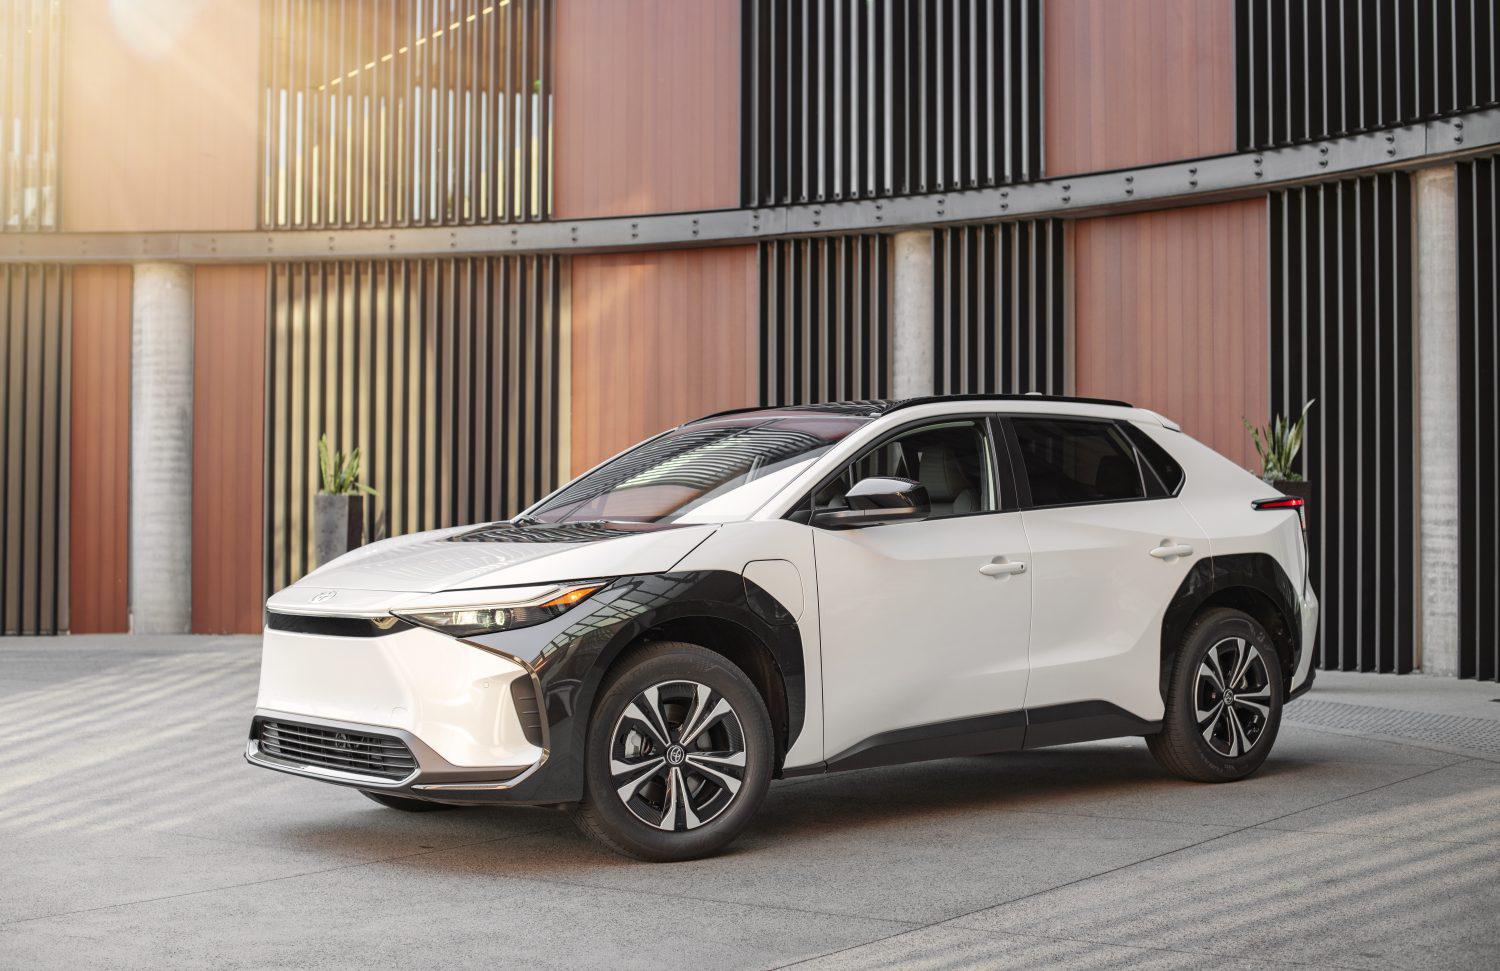 Após 8 anos, Toyota volta ao mercado de carros elétricos com novo SUV